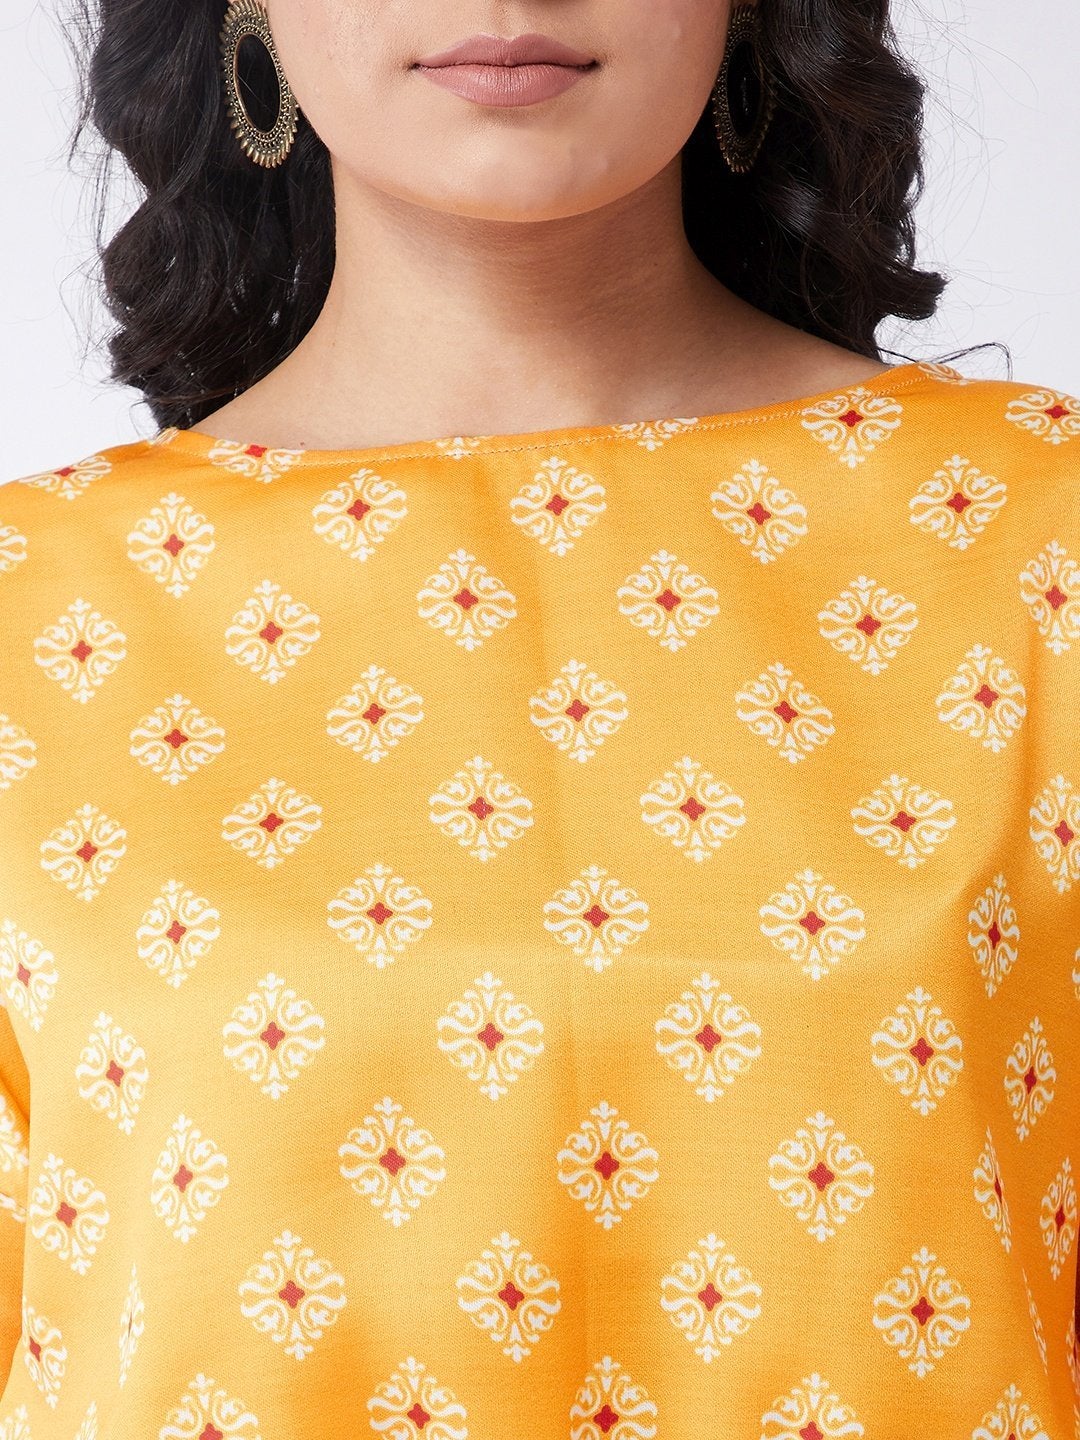 Women's Kasturi Digital Printed Bell Sleeves Top - Pannkh